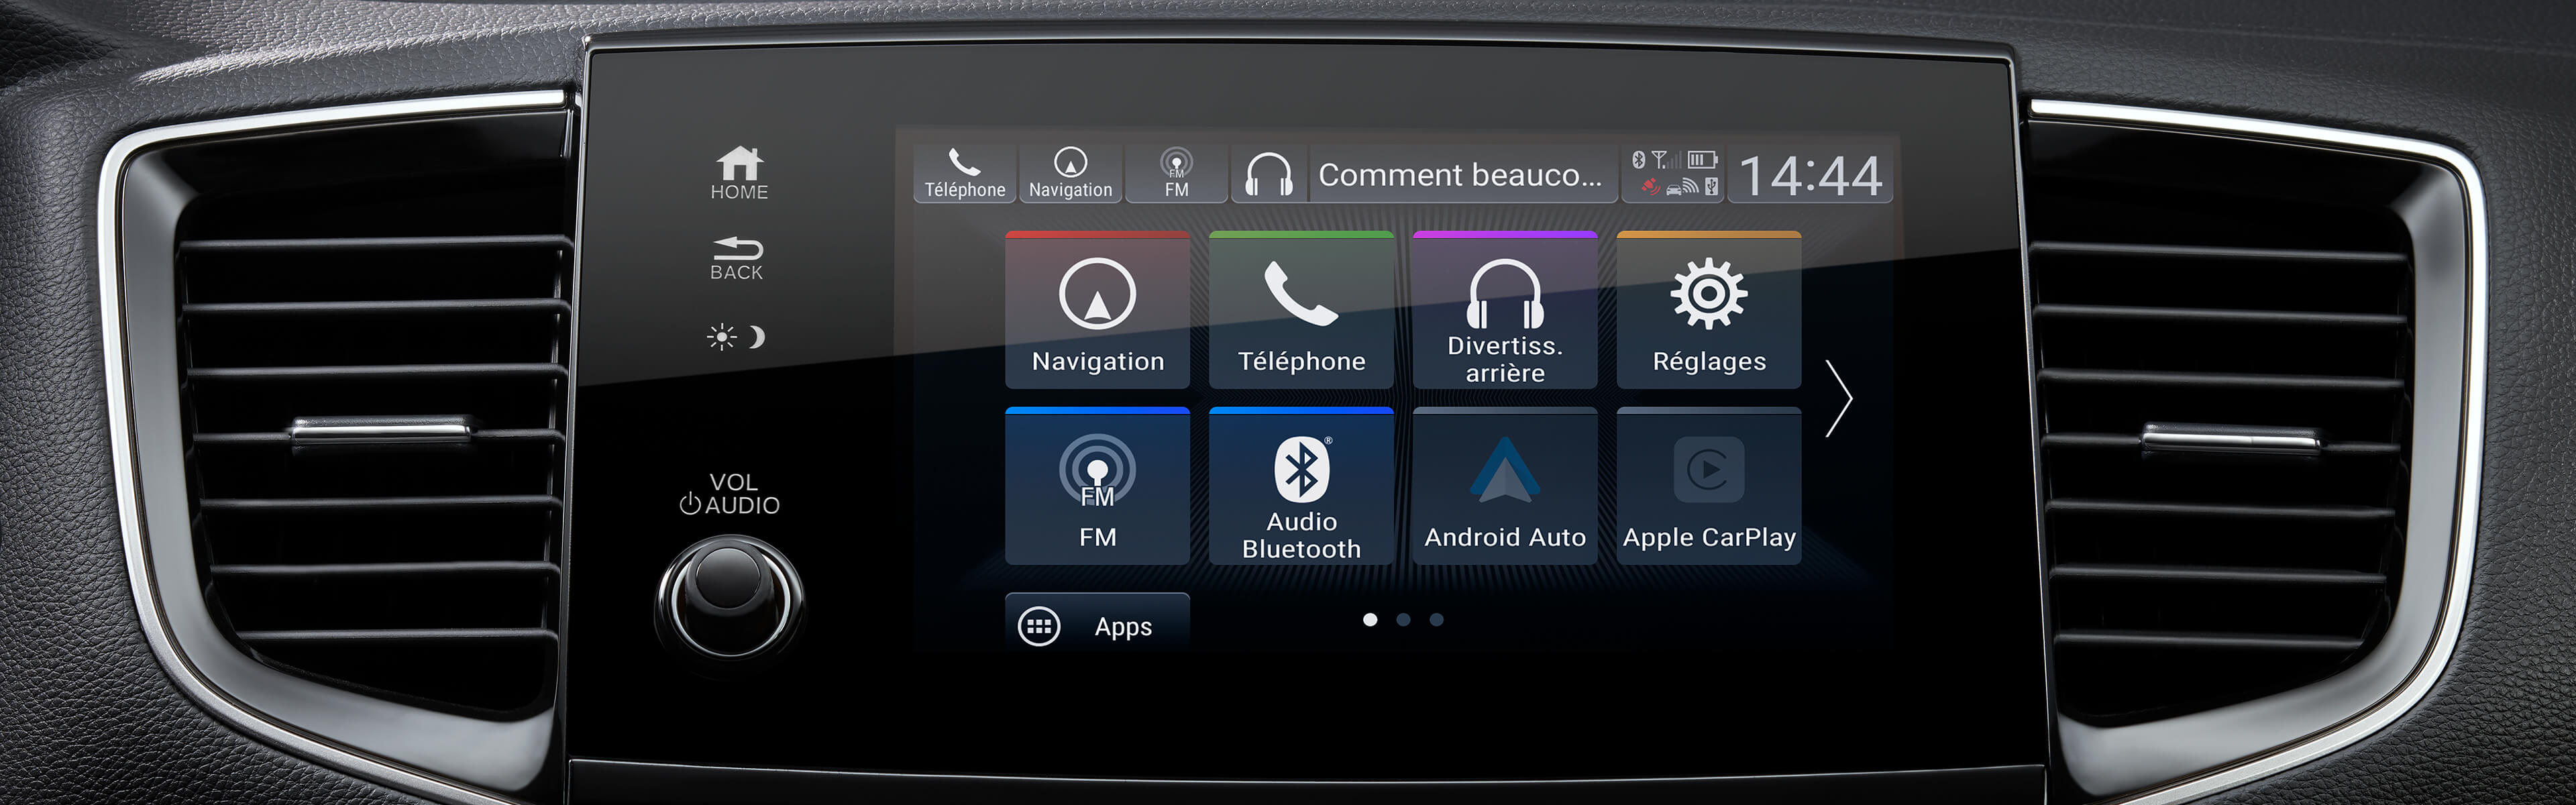 Système audio sur affichage du Honda Pilot 2020